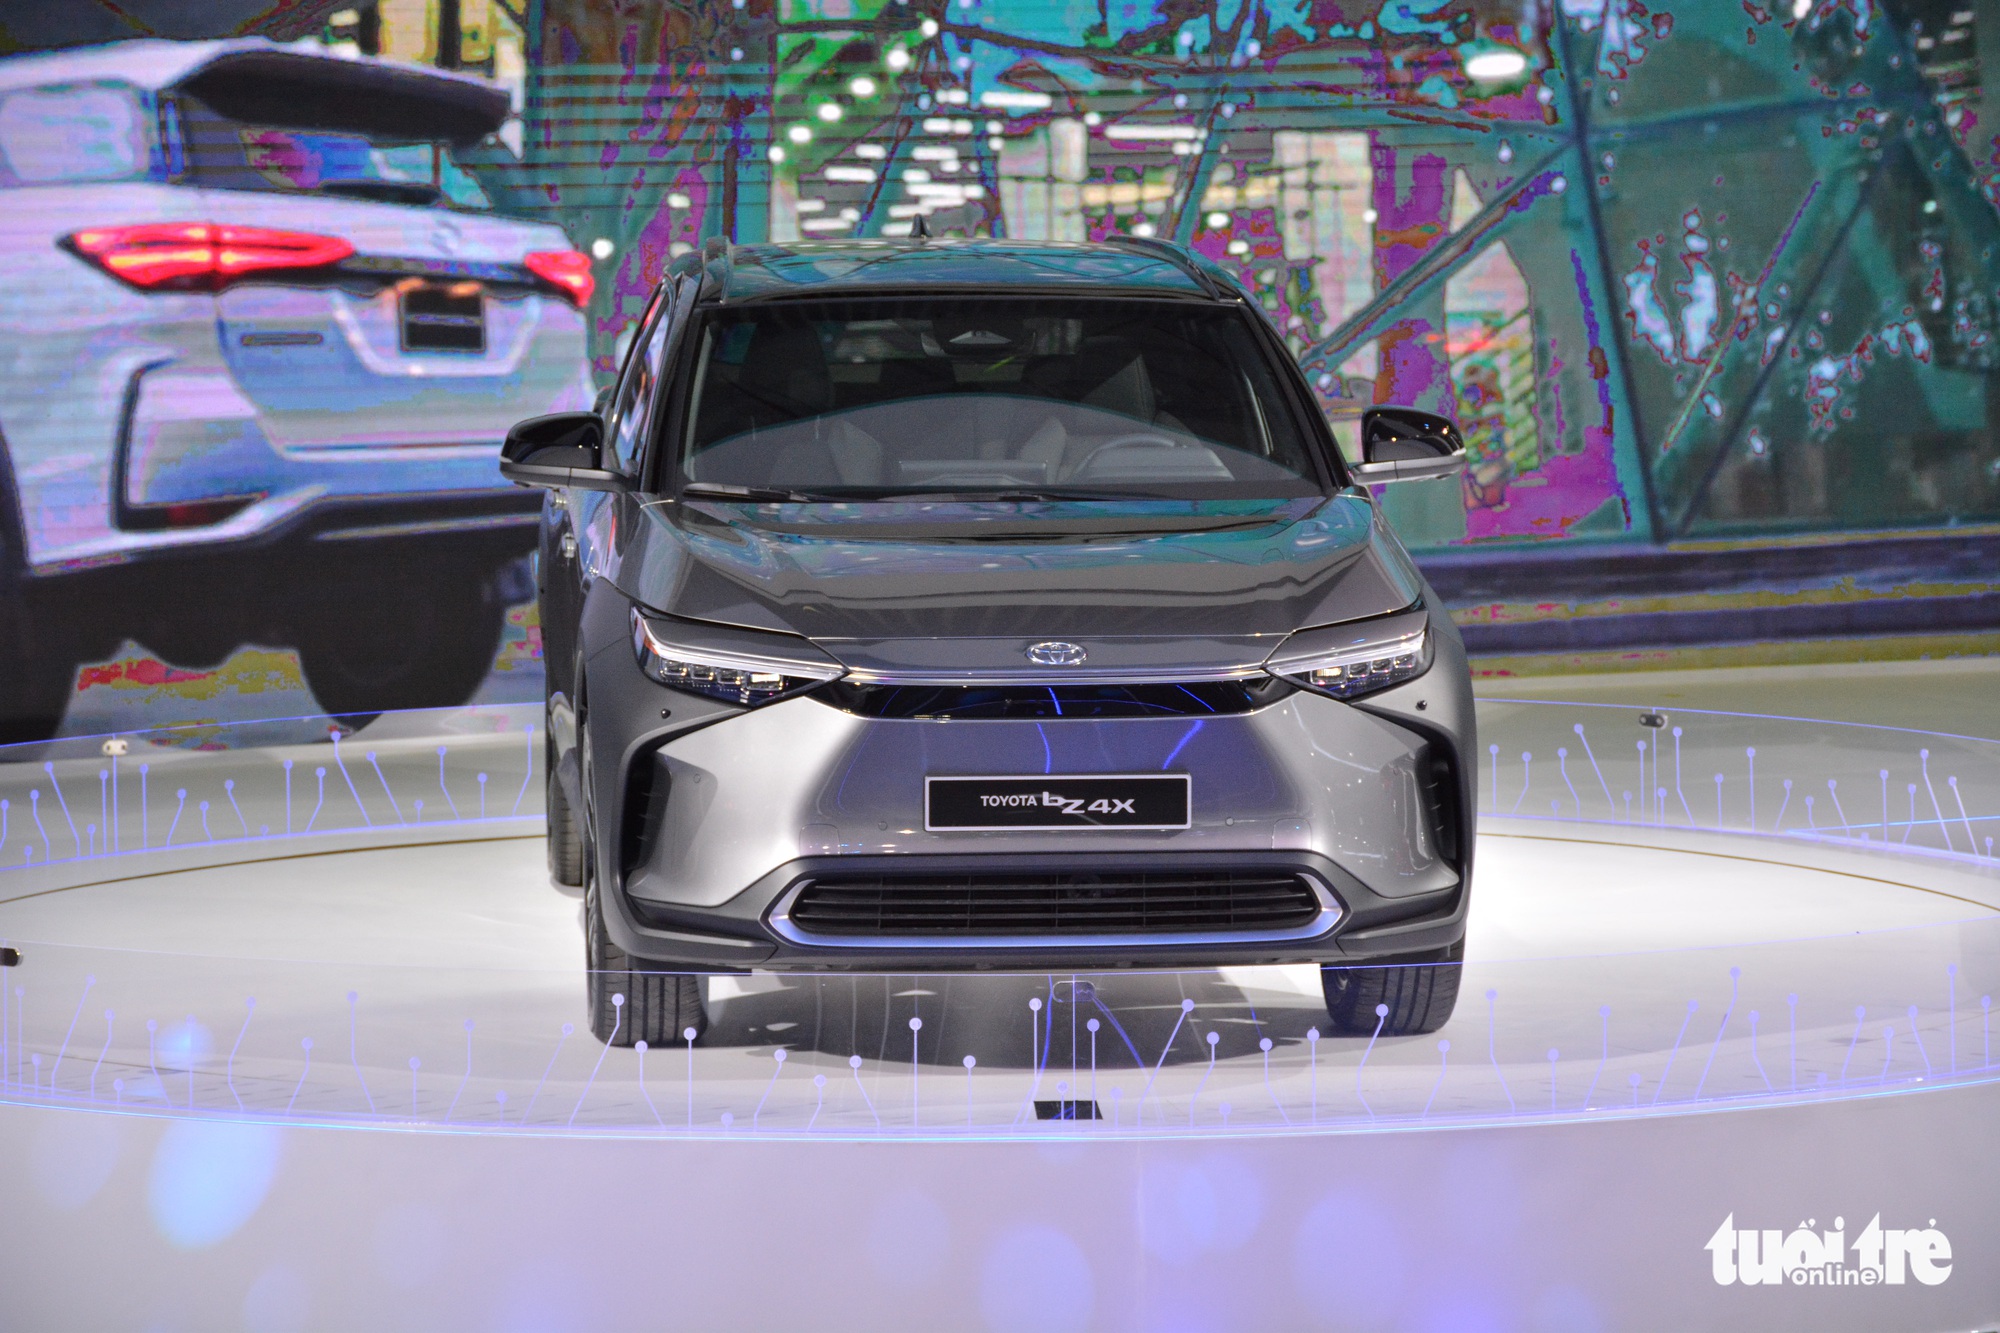 Chi tiết Toyota bZ4X tại VMS 2022: SUV điện tầm trung sáng cửa bán đại trà tại Việt Nam - Ảnh 2.